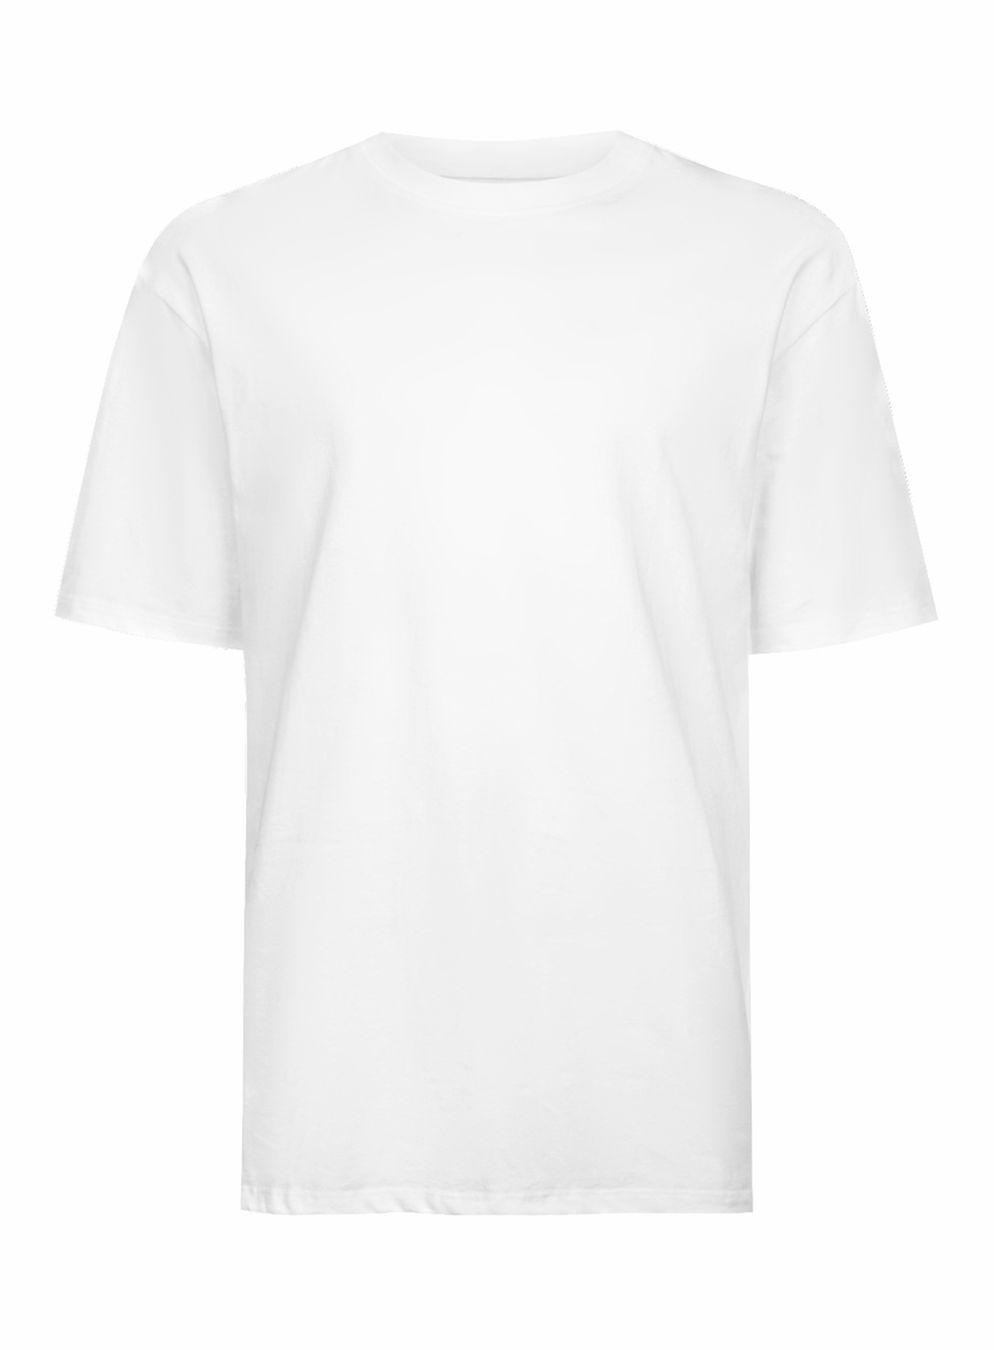 TOPMAN White Oversized T-shirt in White for Men - Lyst